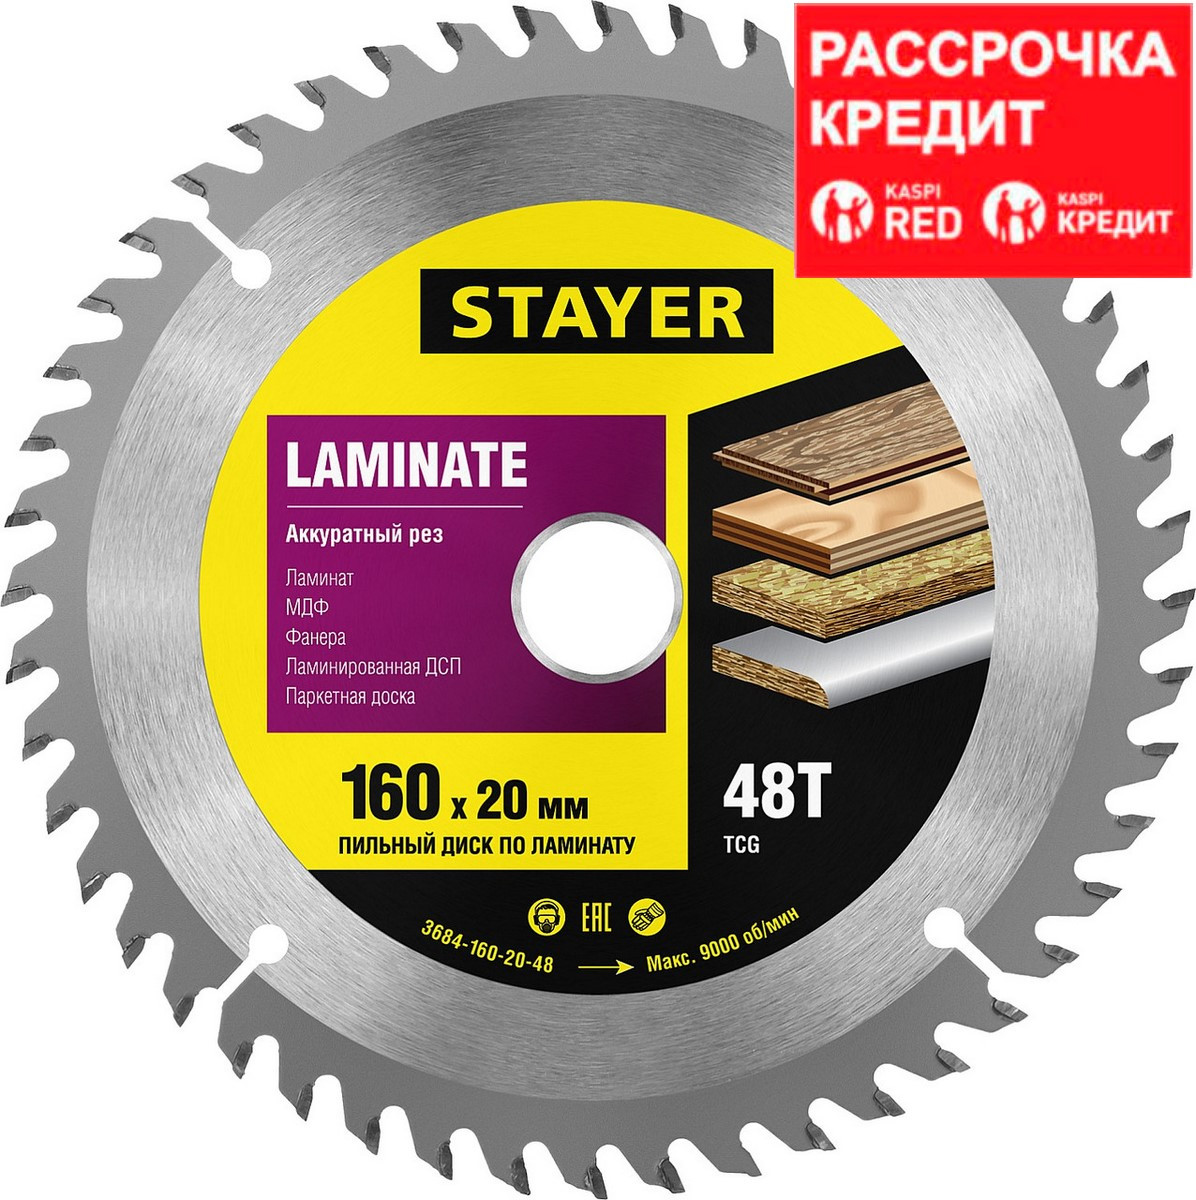 STAYER Laminate 160 x 20мм 48T, диск пильный по ламинату, аккуратный рез, аккуратный рез (3684-160-20-48)